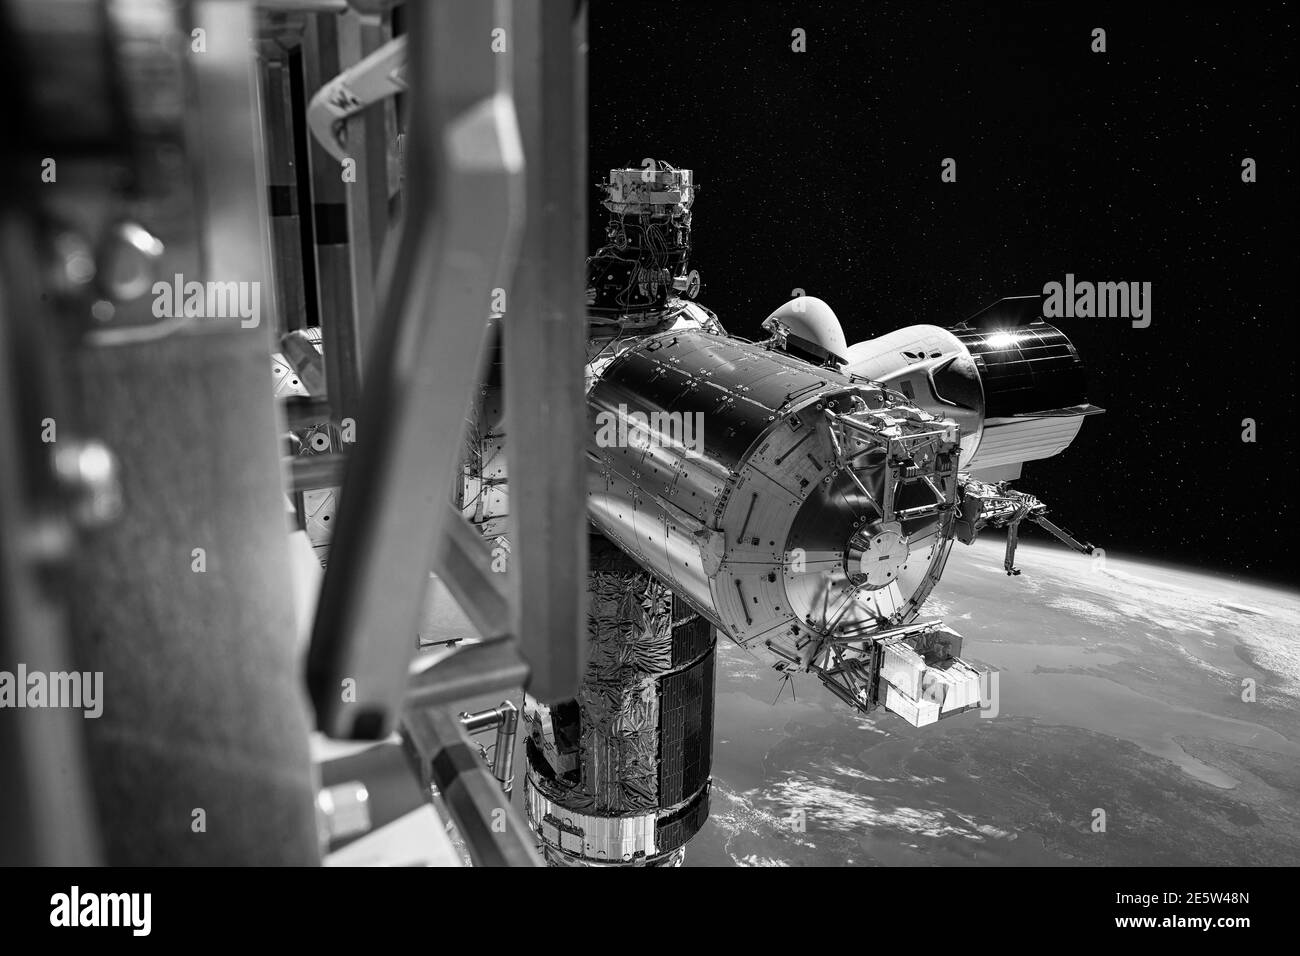 SpaceX Crew Dragon Raumschiff ist an der Raumstation angedockt. Elemente dieses Bildes, die von der NASA eingerichtet wurden. Stockfoto